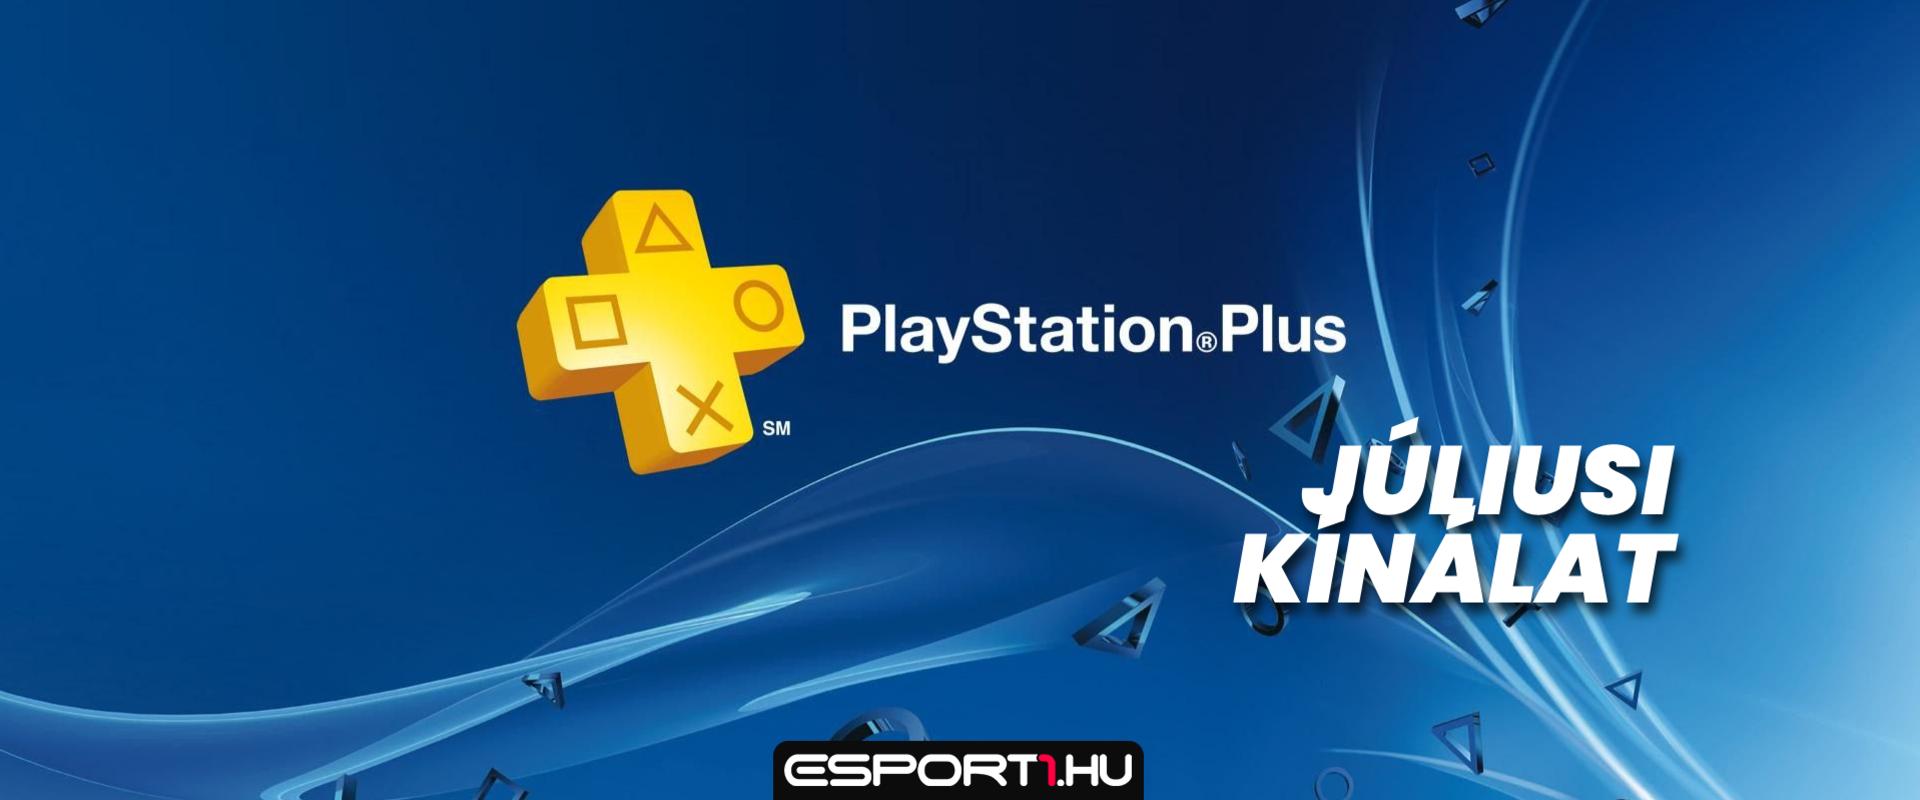 PlayStation Plus: Három játék, amivel júliustól ingyen játszhatunk